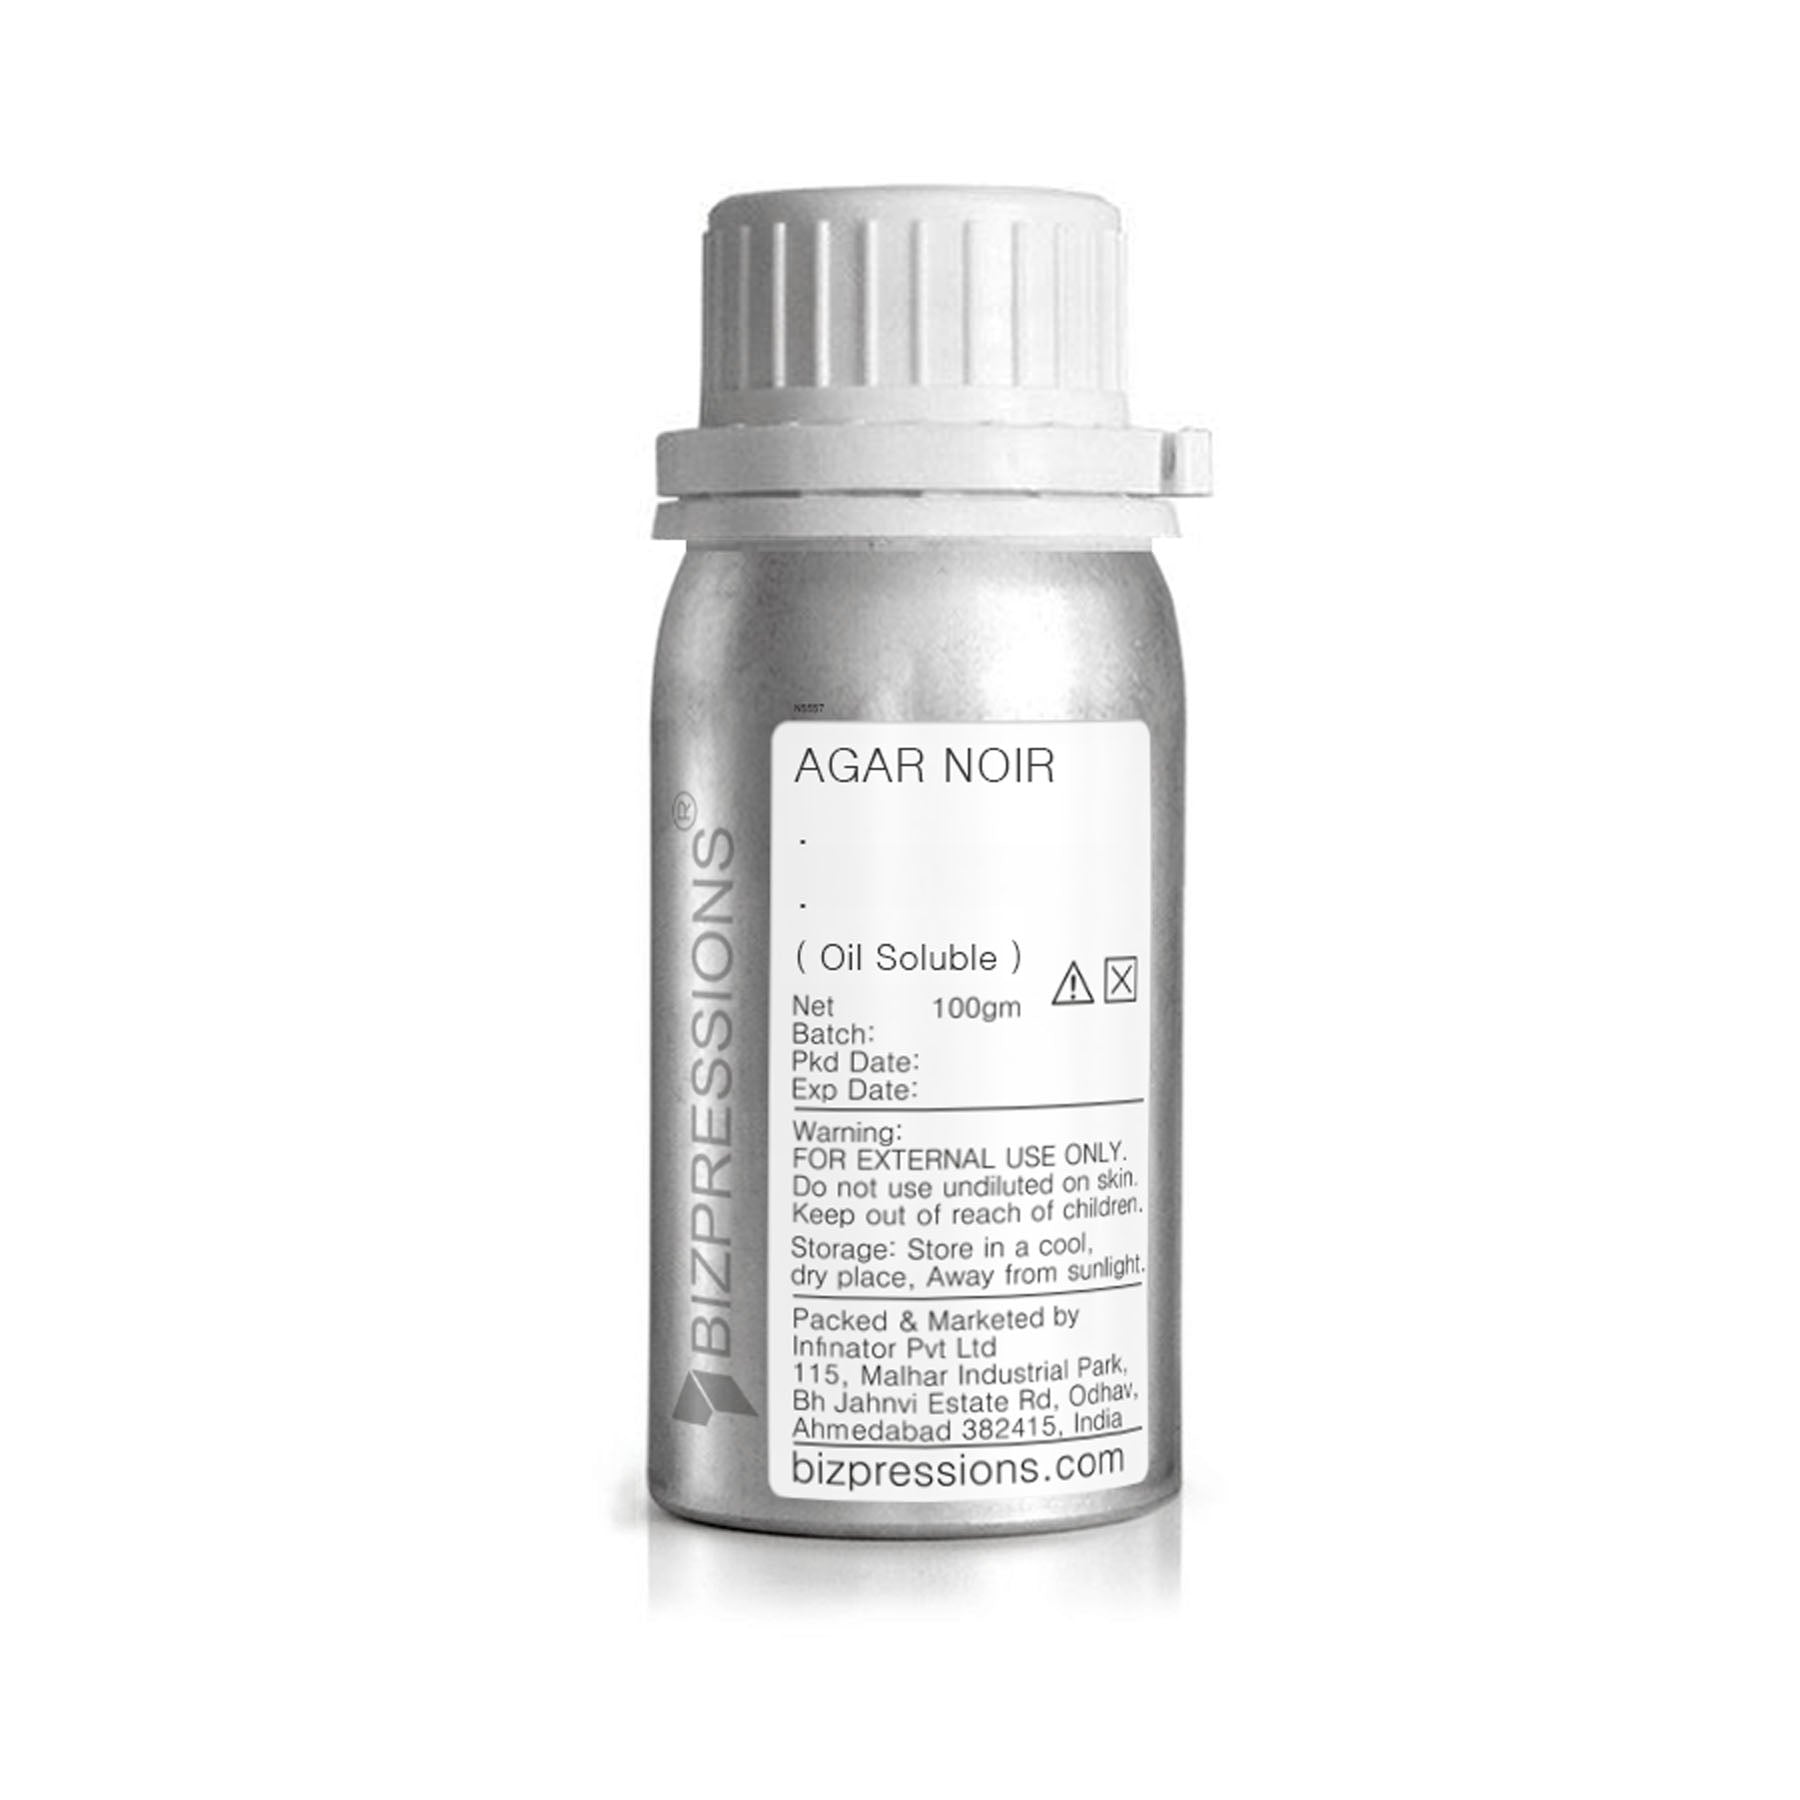 AGAR NOIR - Fragrance ( Oil Soluble ) - 100 gm